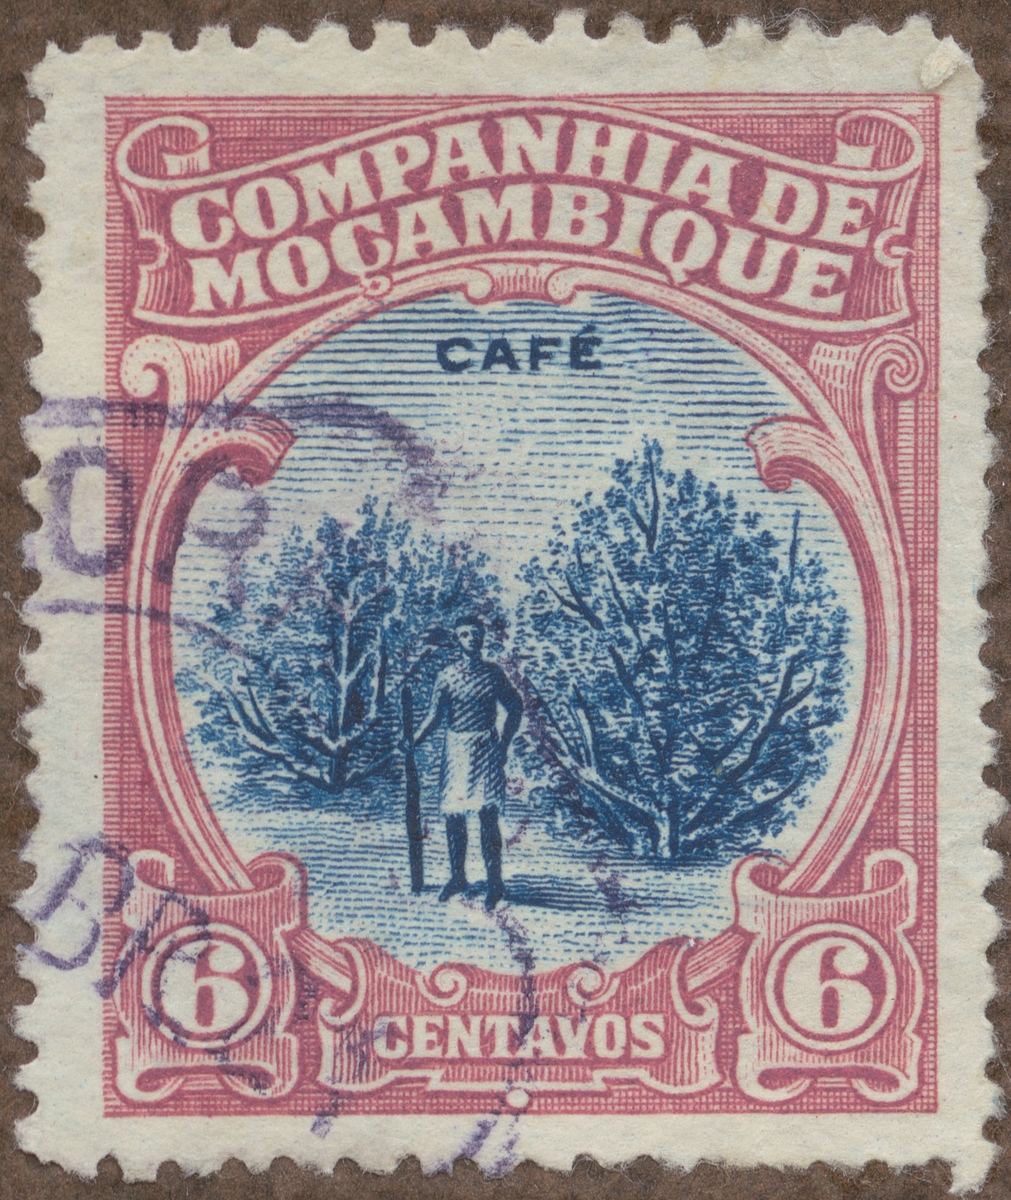 Frimärke ur Gösta Bodmans filatelistiska motivsamling, påbörjad 1950.
Frimärke från Mozambique C.i, 1918. Motiv av kaffeodling.